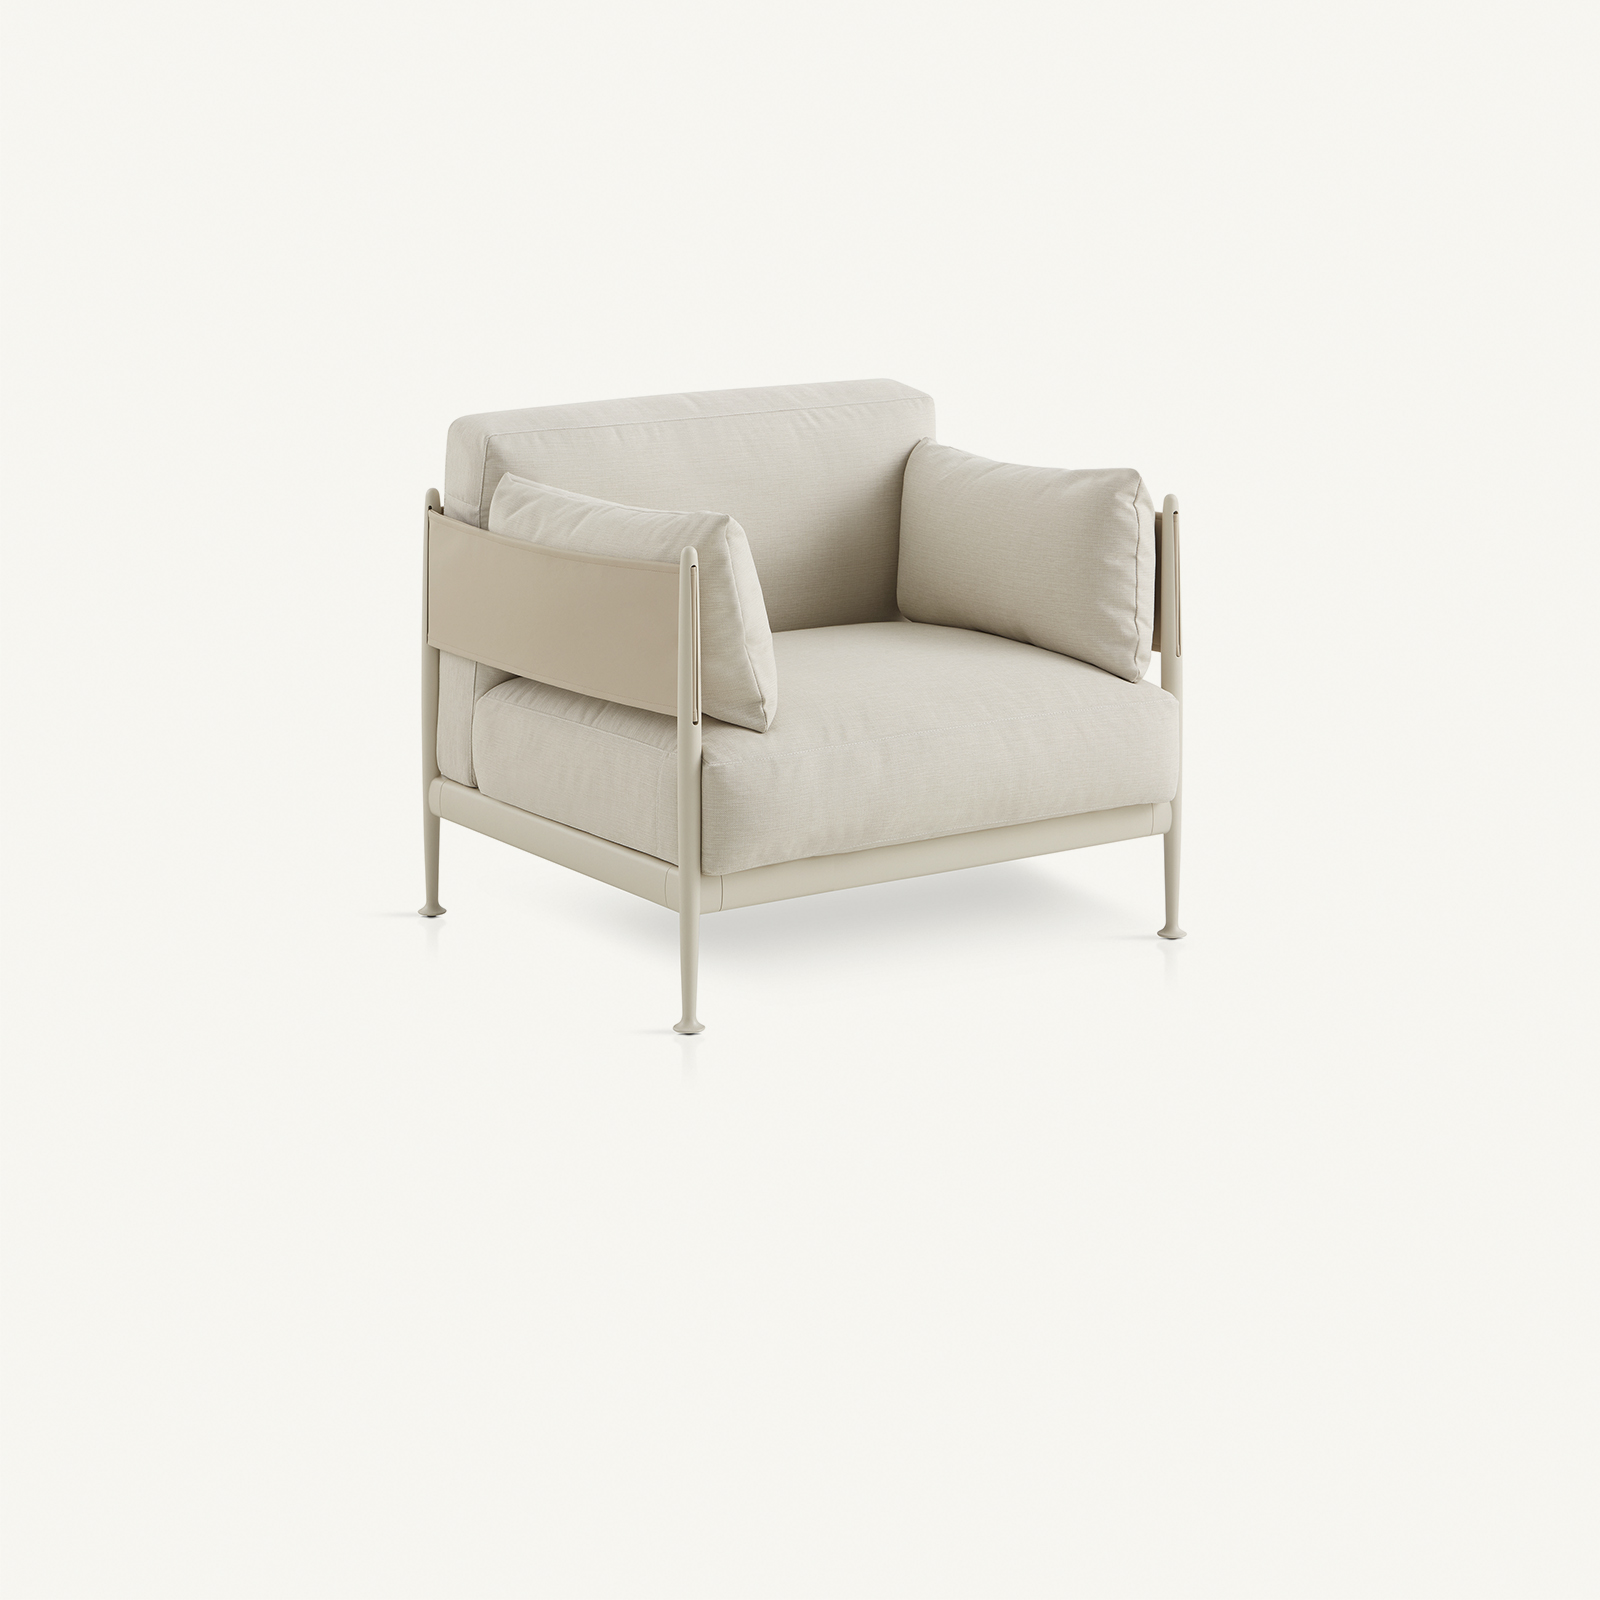 armchairs - obi armchair